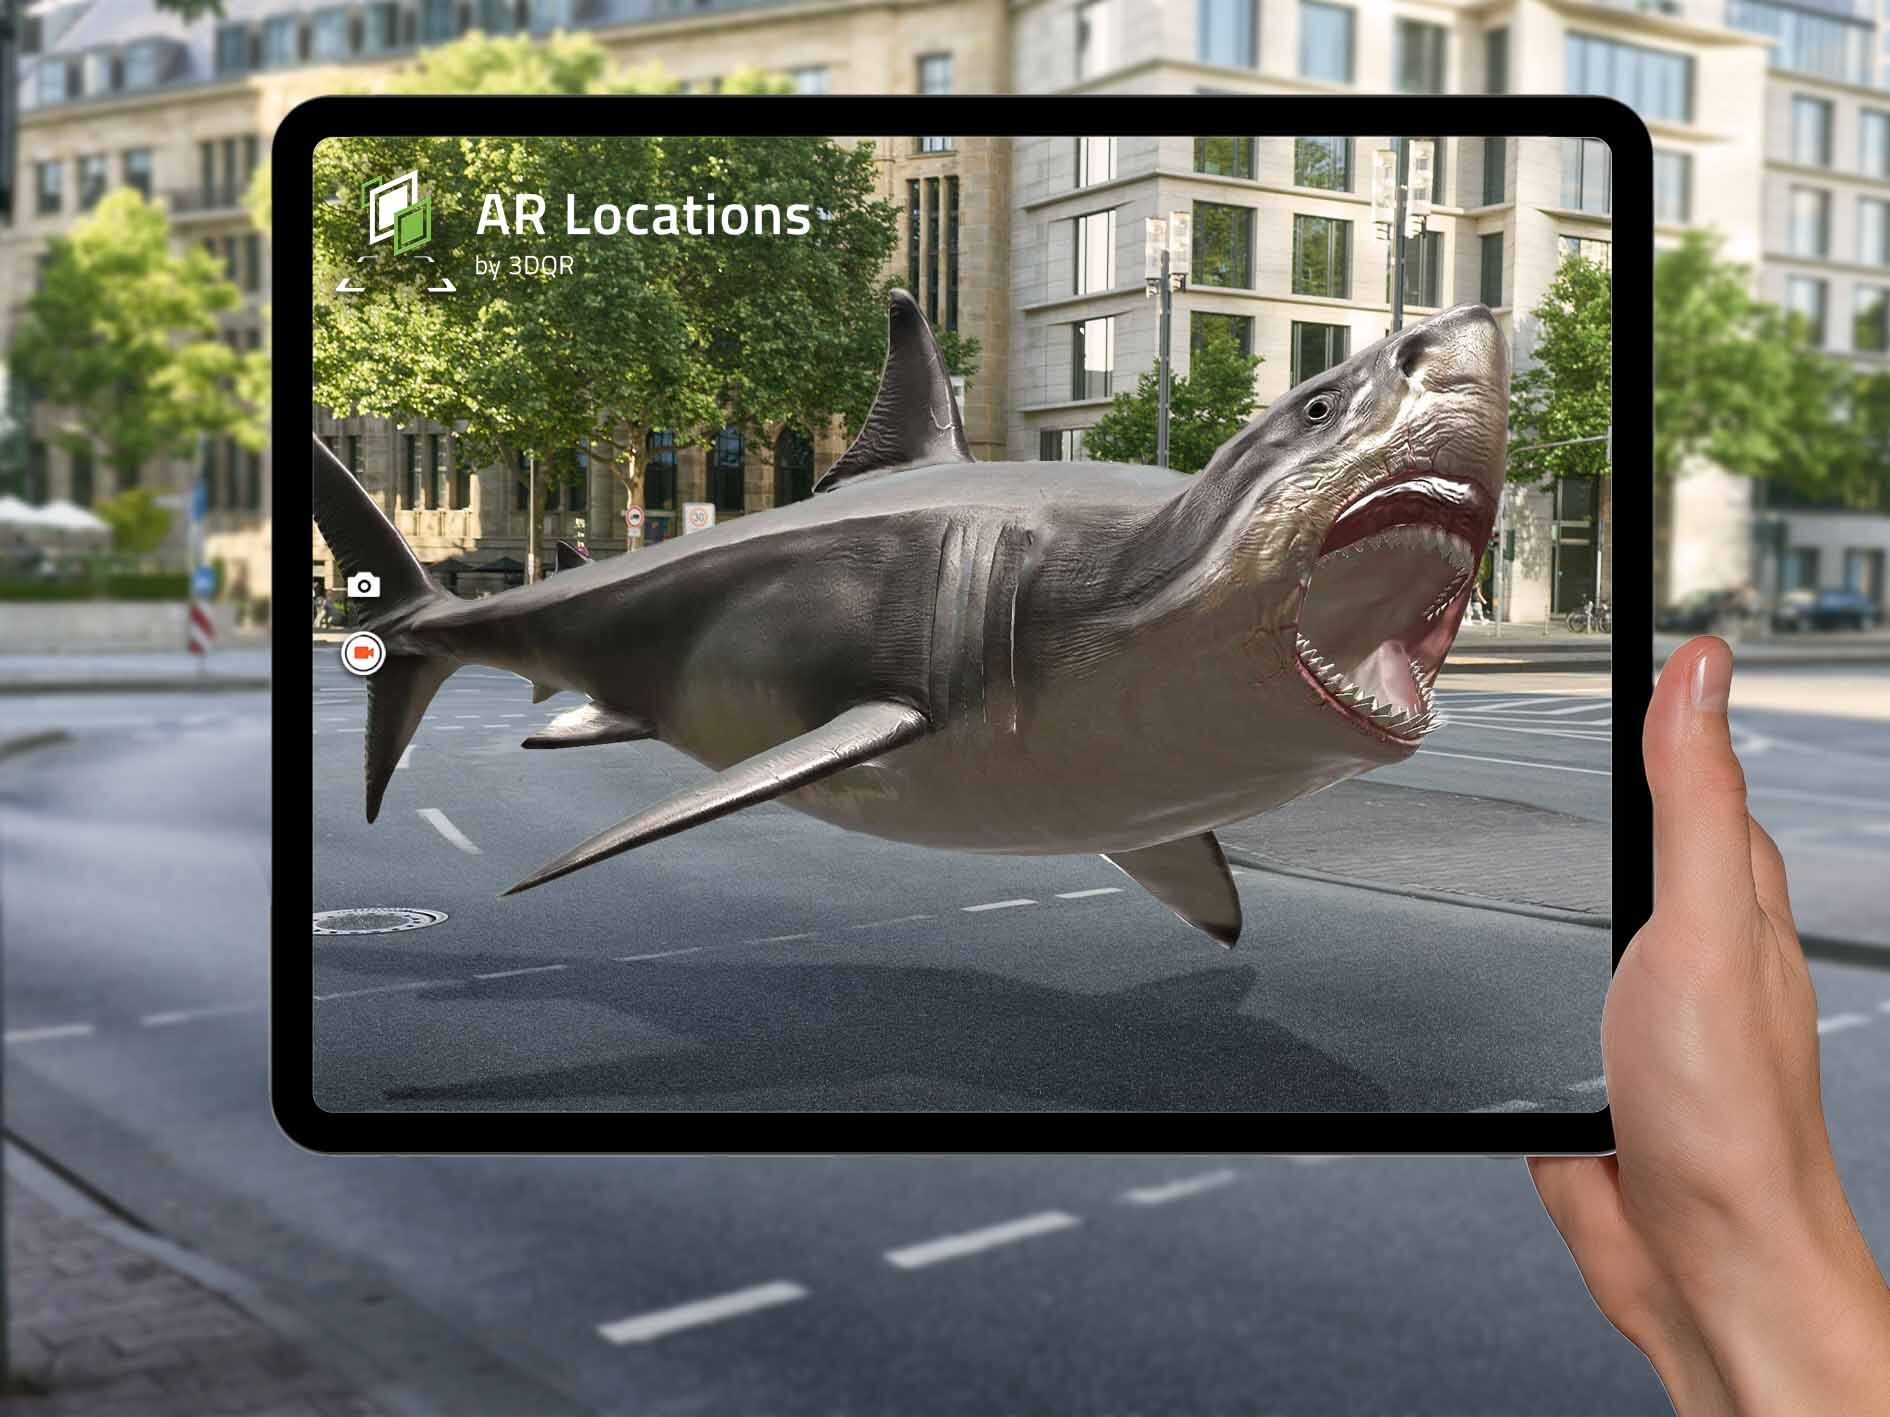 interaktive AR-Szene von einem Hai